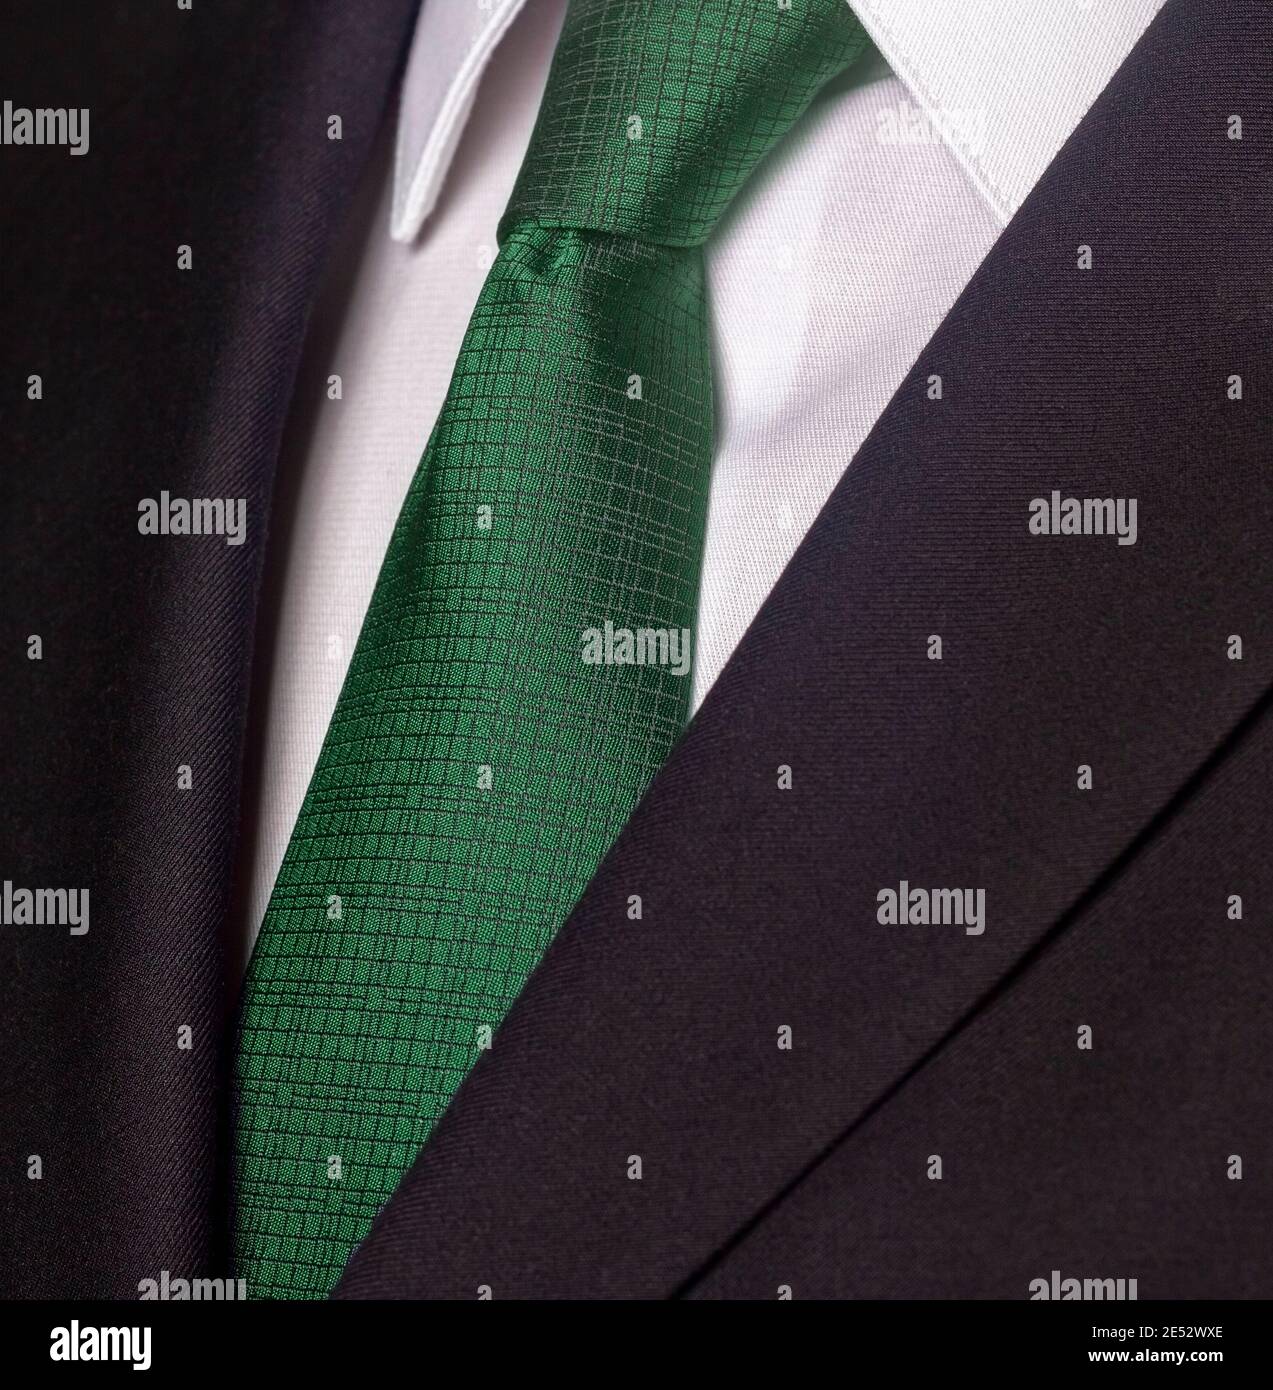 Nahaufnahme eines schwarzen Business-Anzug und grüne Krawatte  Stockfotografie - Alamy